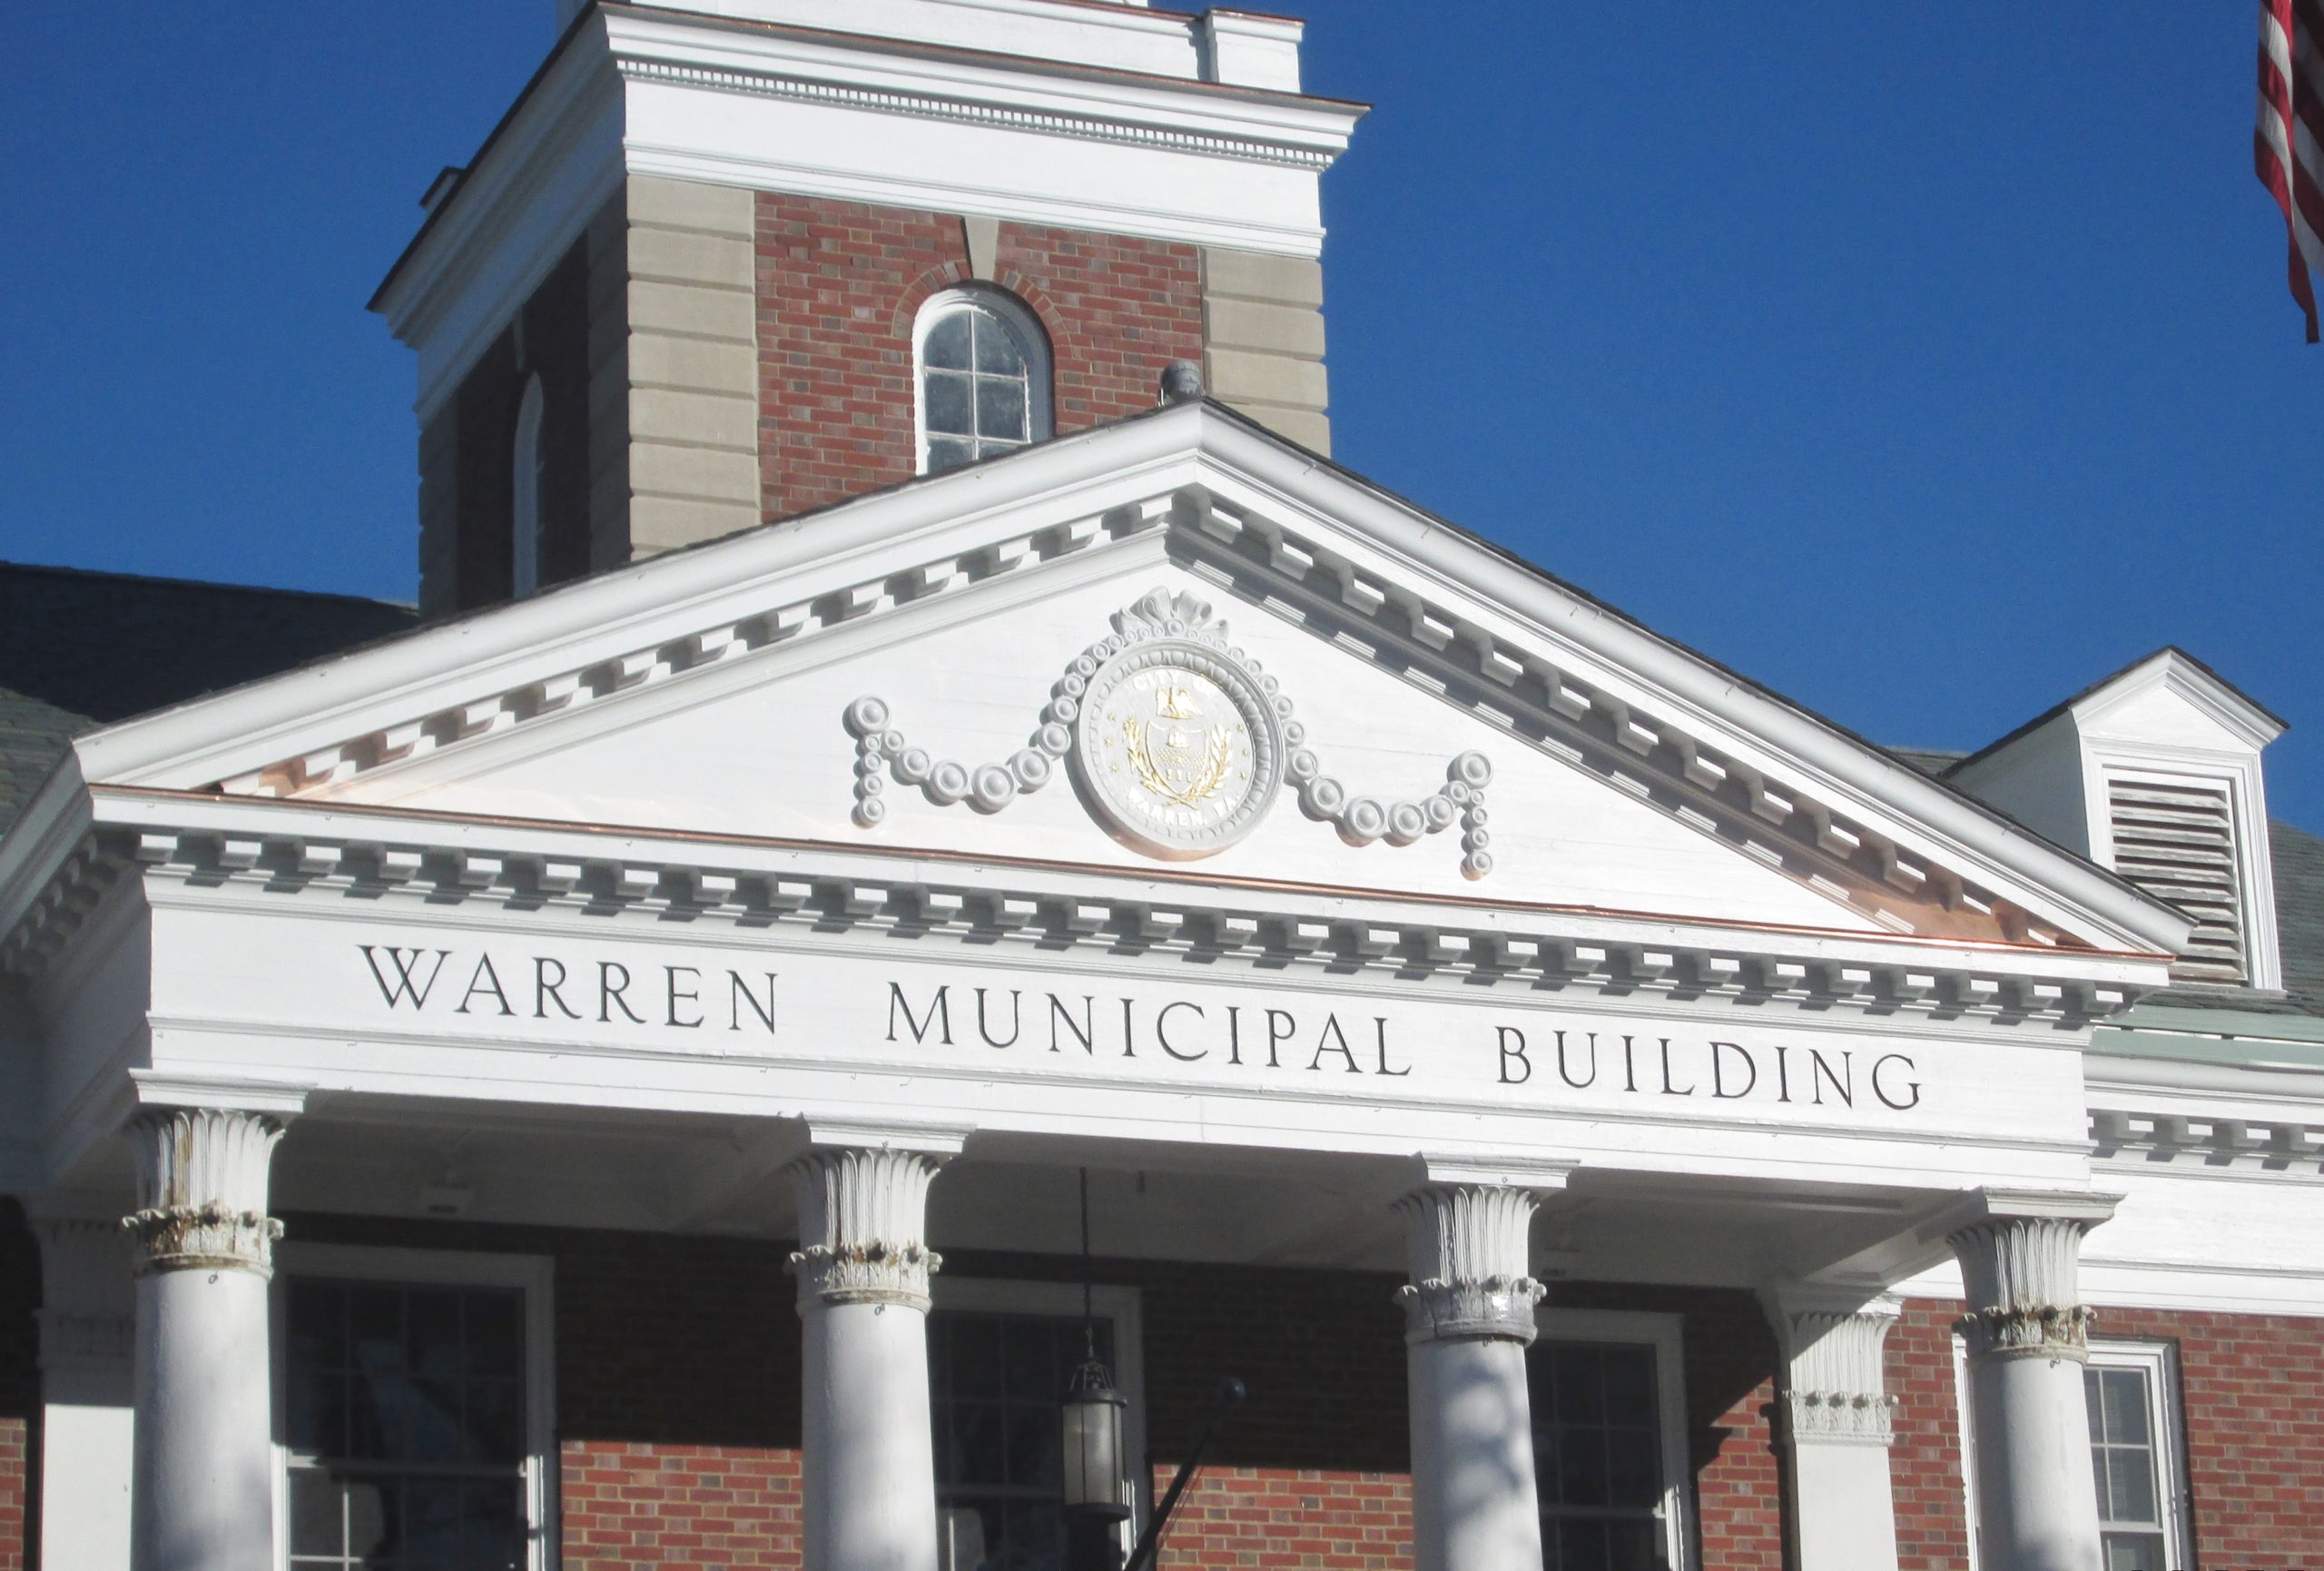 Warren Municipal Building